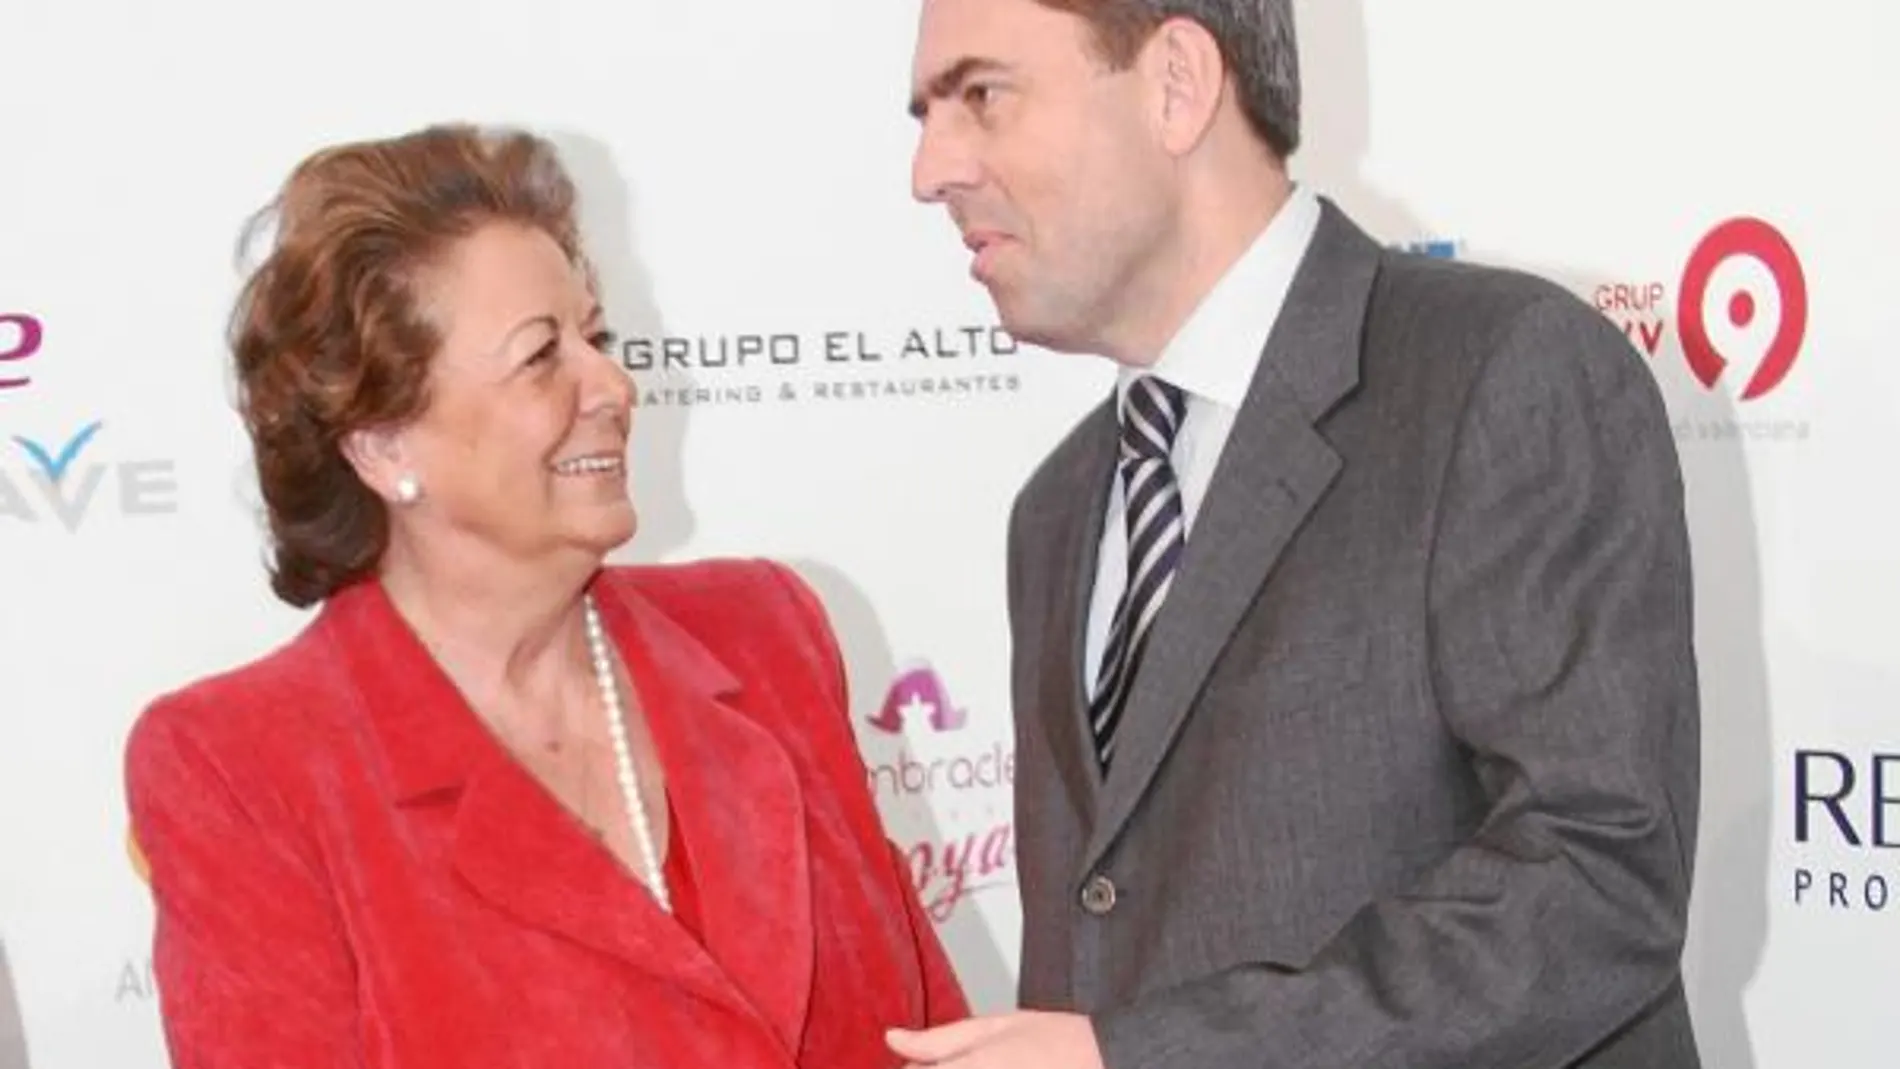 Rita Barberá y Vicente Rambla inauguraron la pasarela